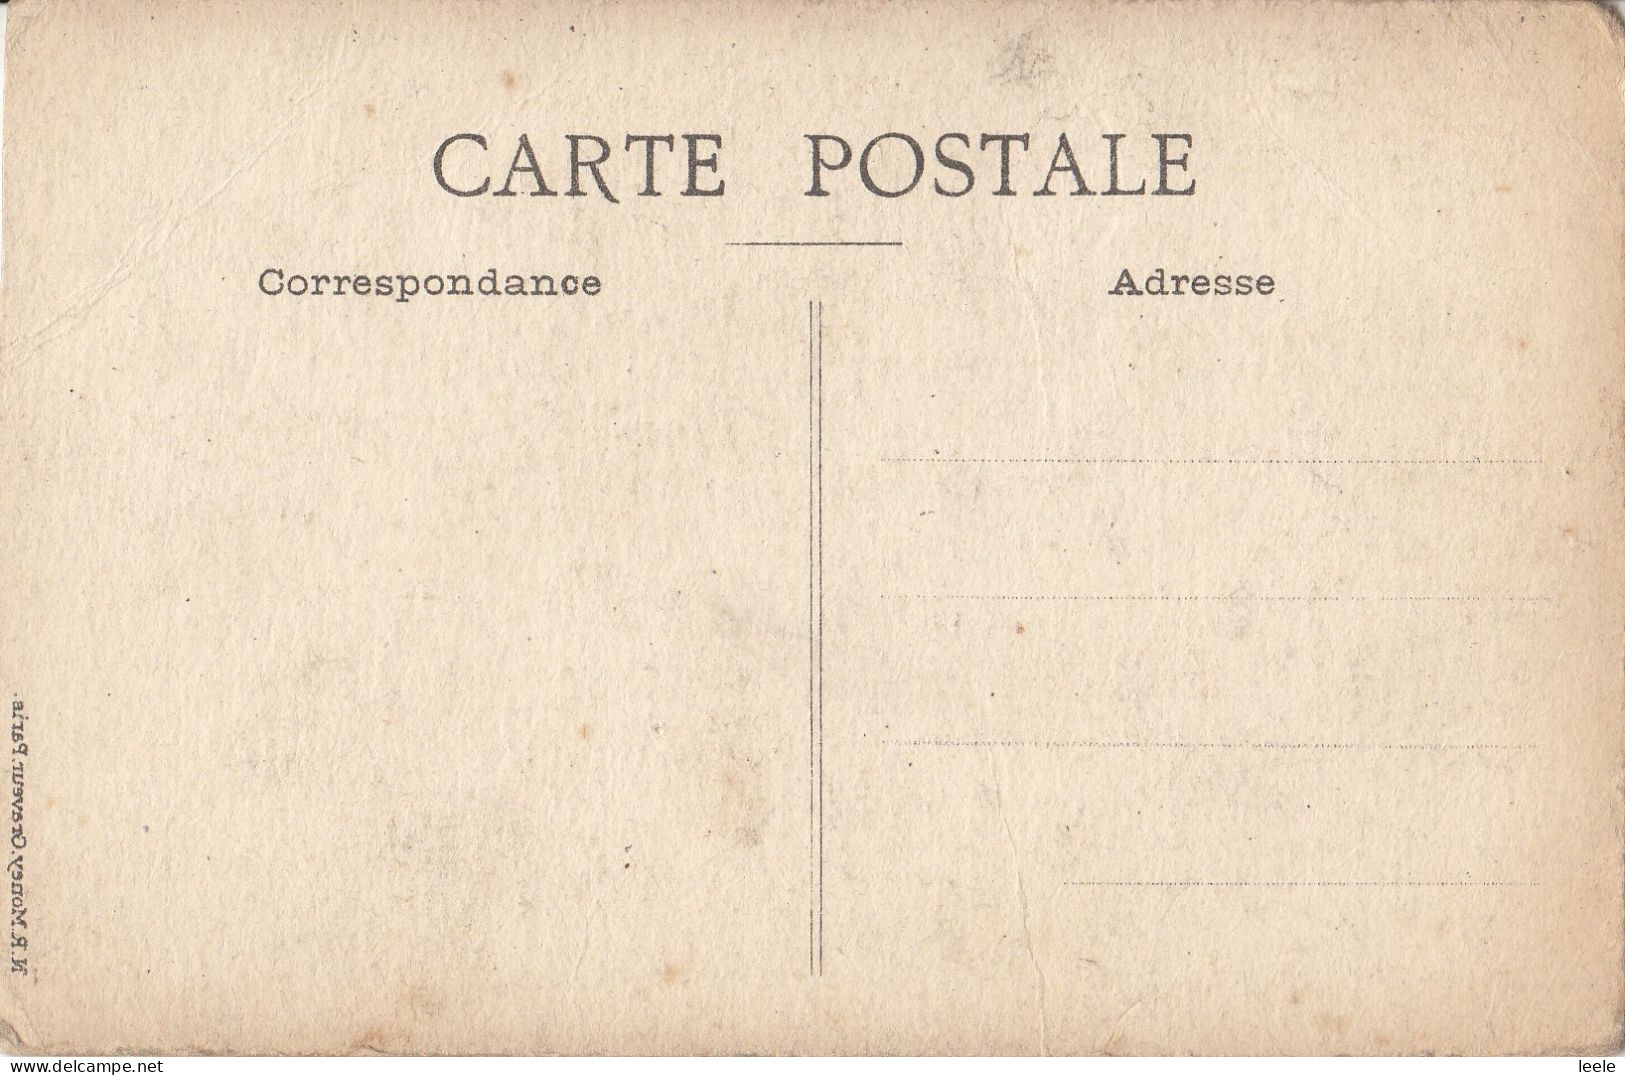 CM52. Vintage Postcard. Paquebot Lutelia. Cie Sud-Atlantique - Dampfer